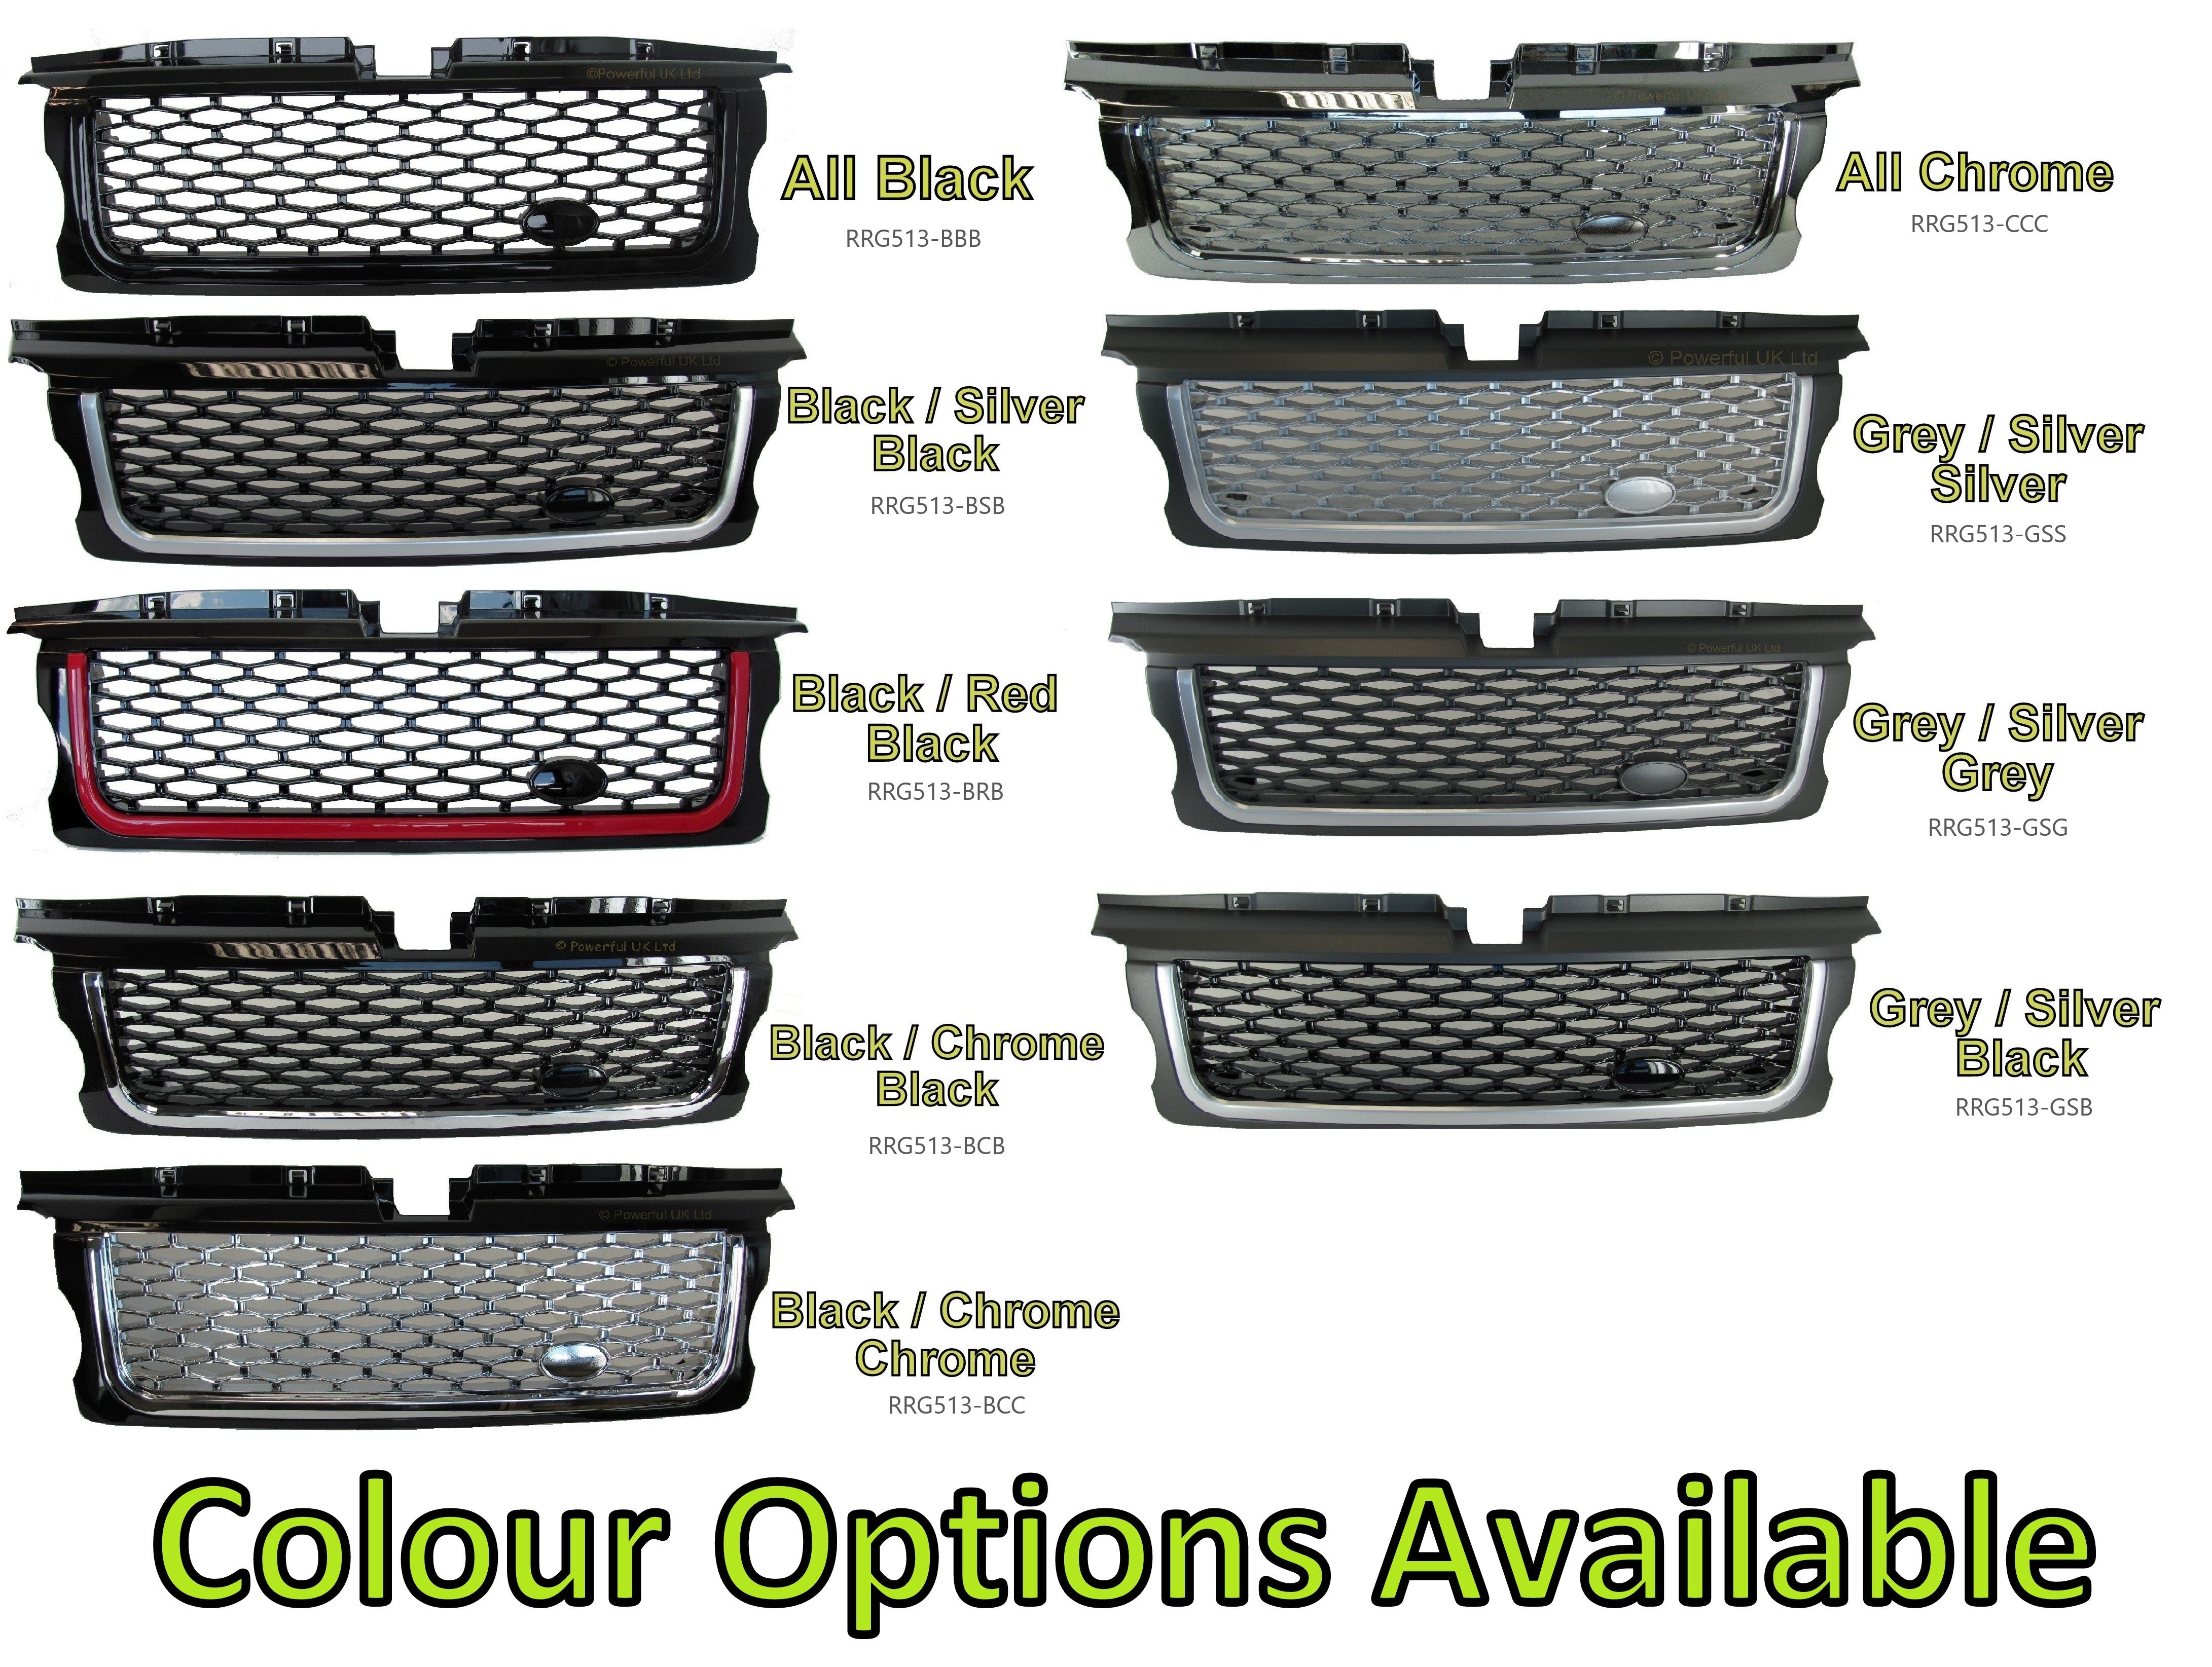 Front Grille - Black/Chrome/Black for Range Rover Sport 05-09